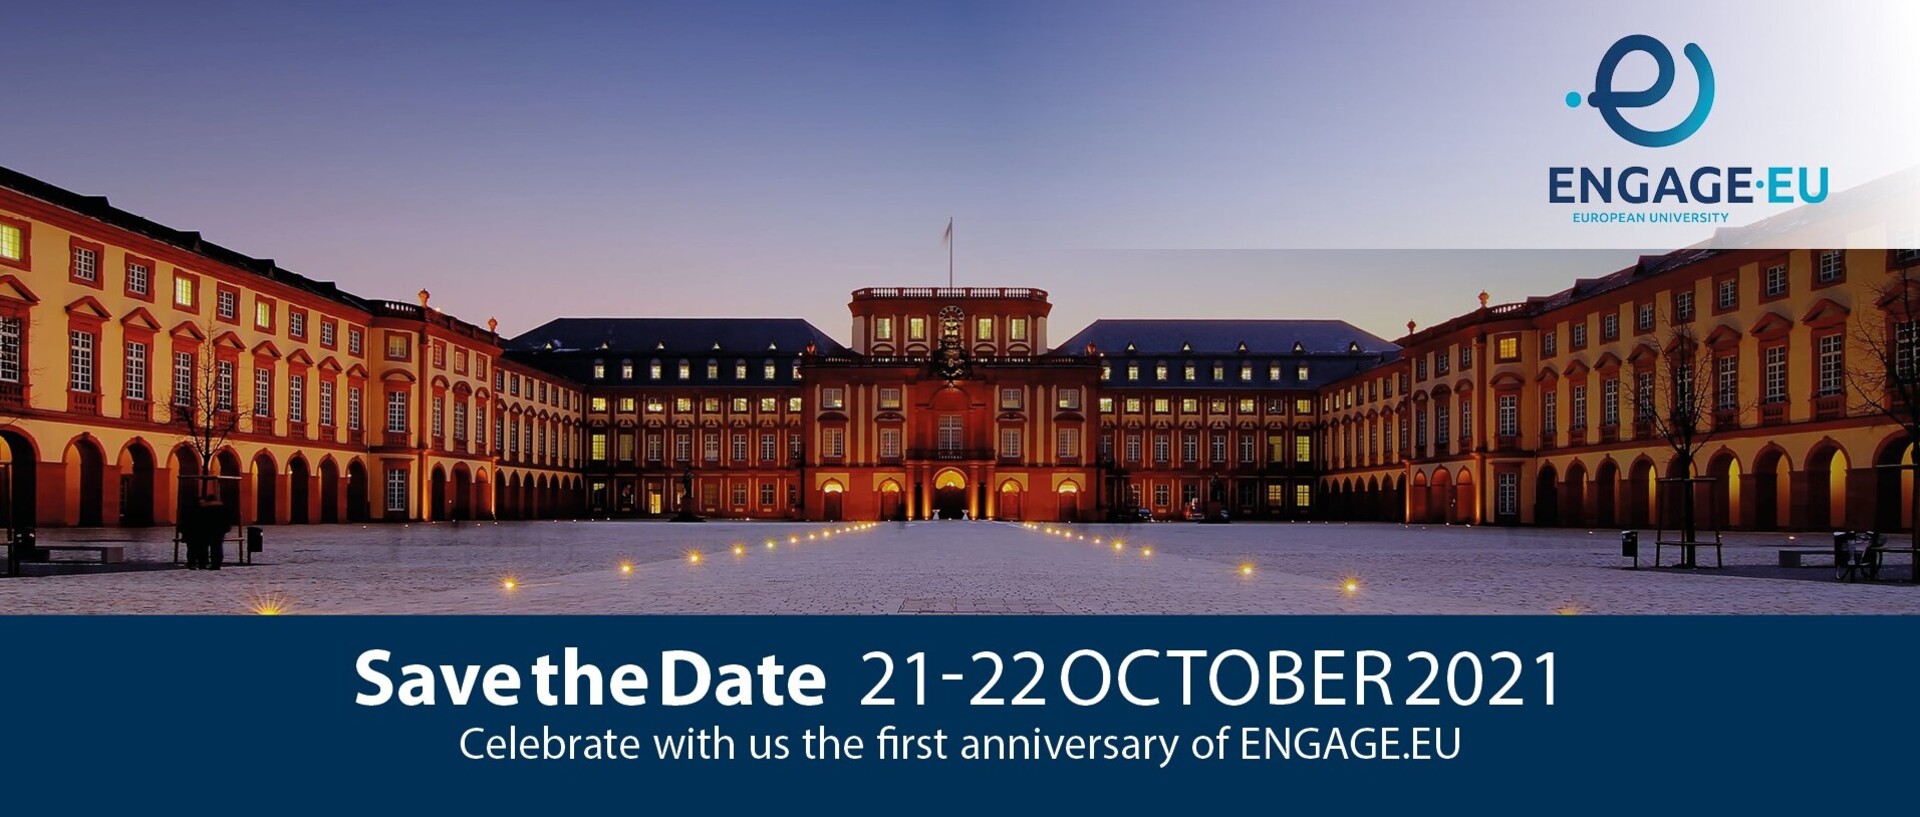 Header ders Schlosses der Universität Mannheim mit dem Logo von Engage.EU.